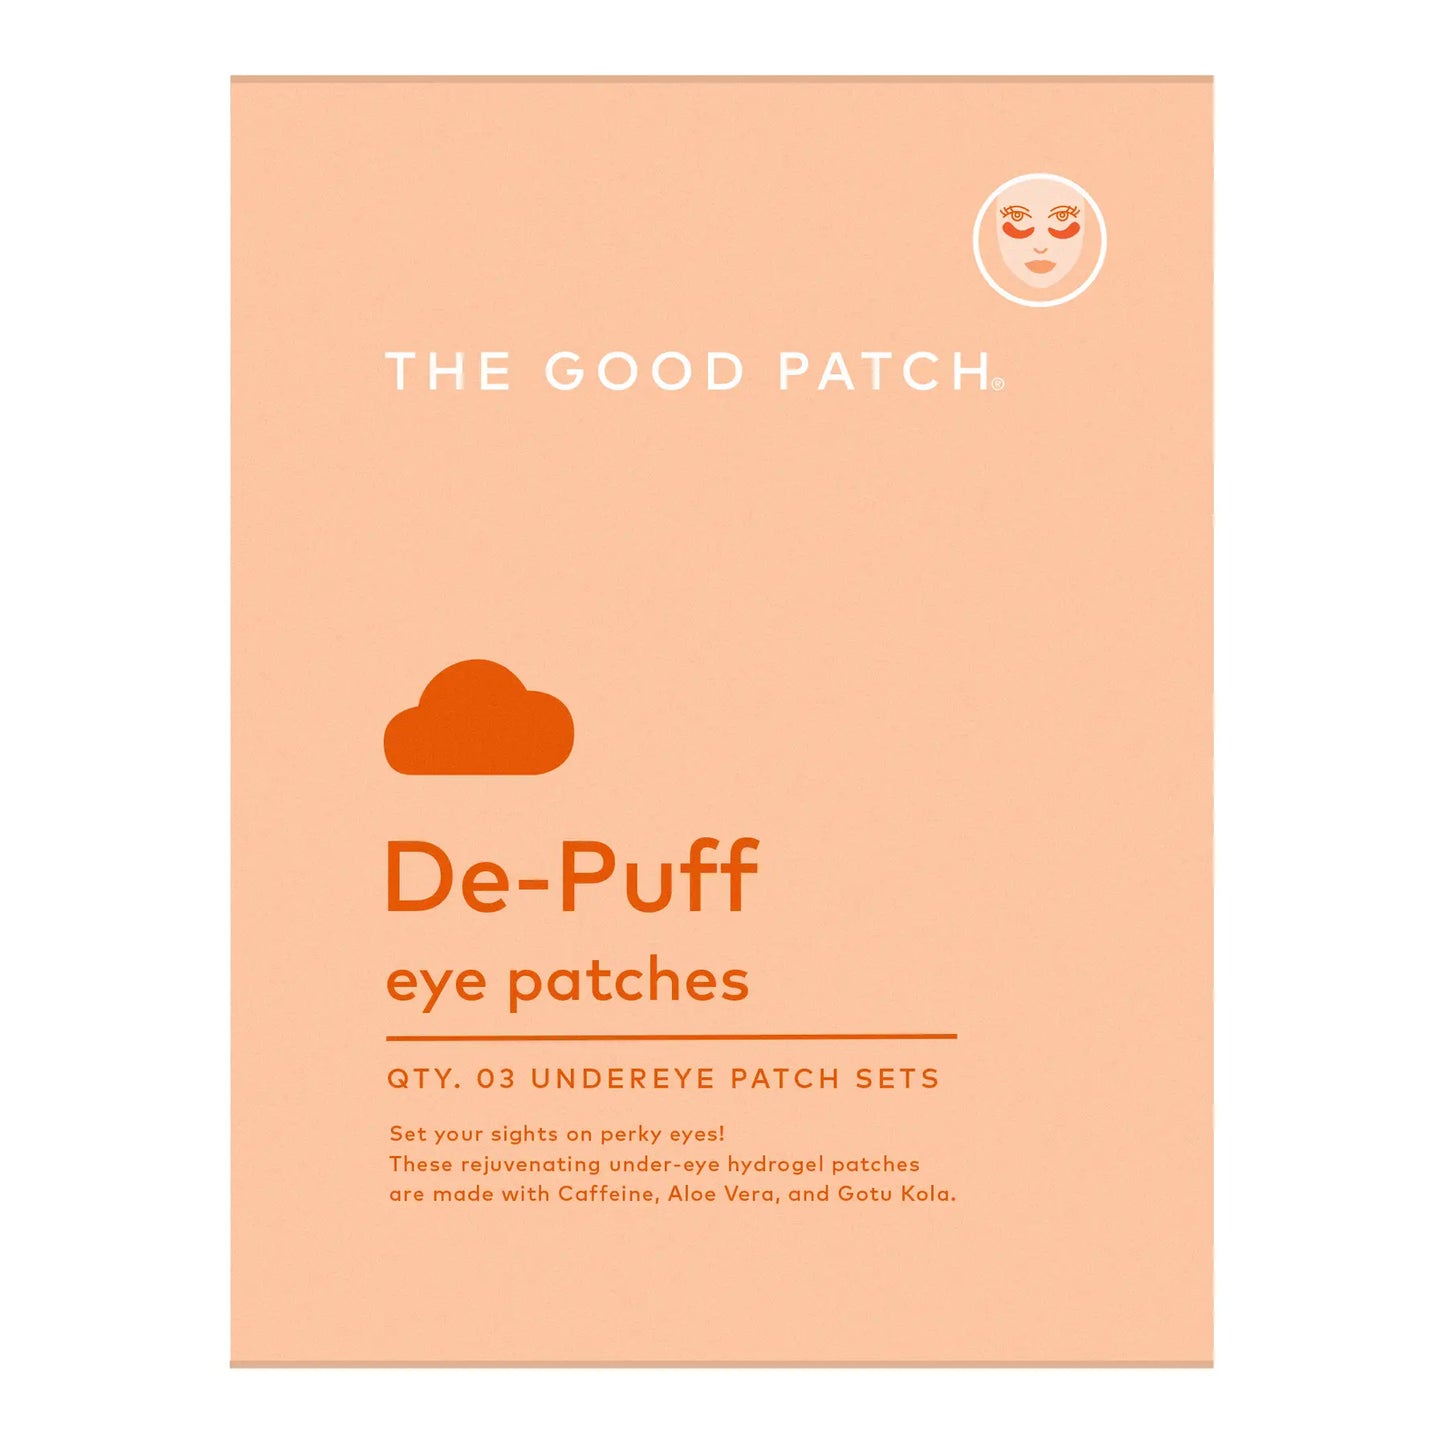 de-puff patches